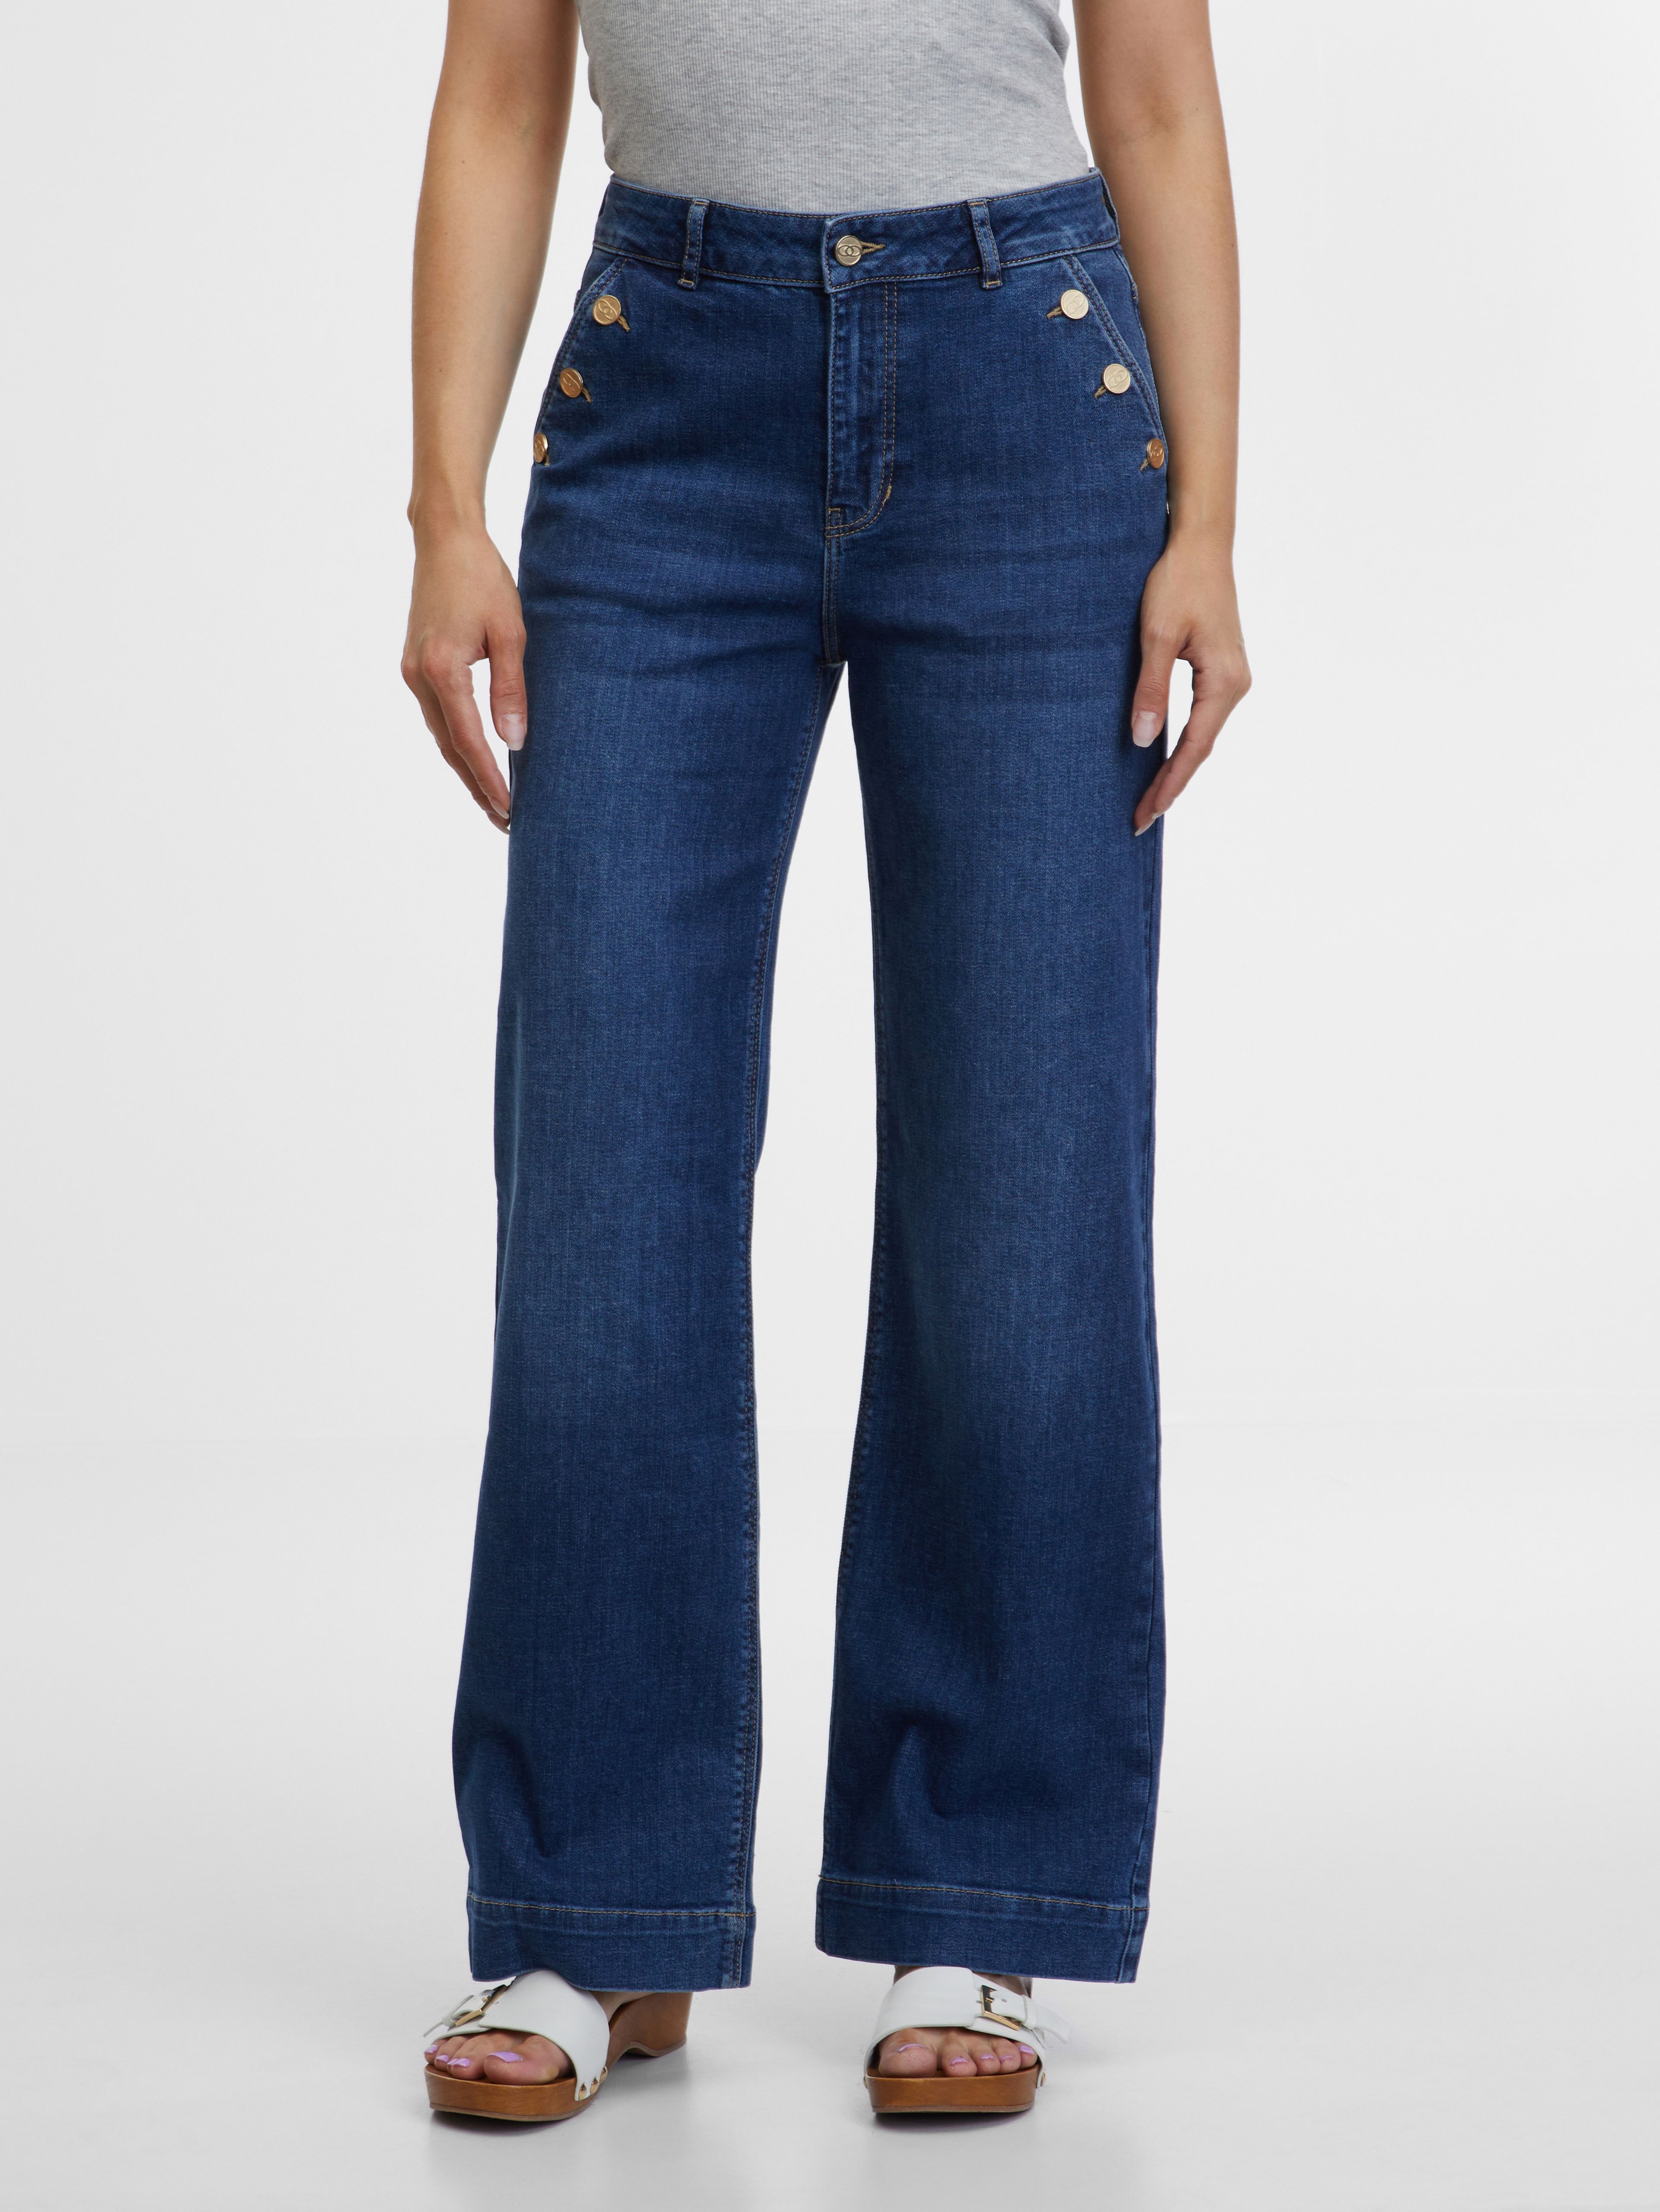 Granatowe jeansy damskie z szeroką nogawką ORSAY